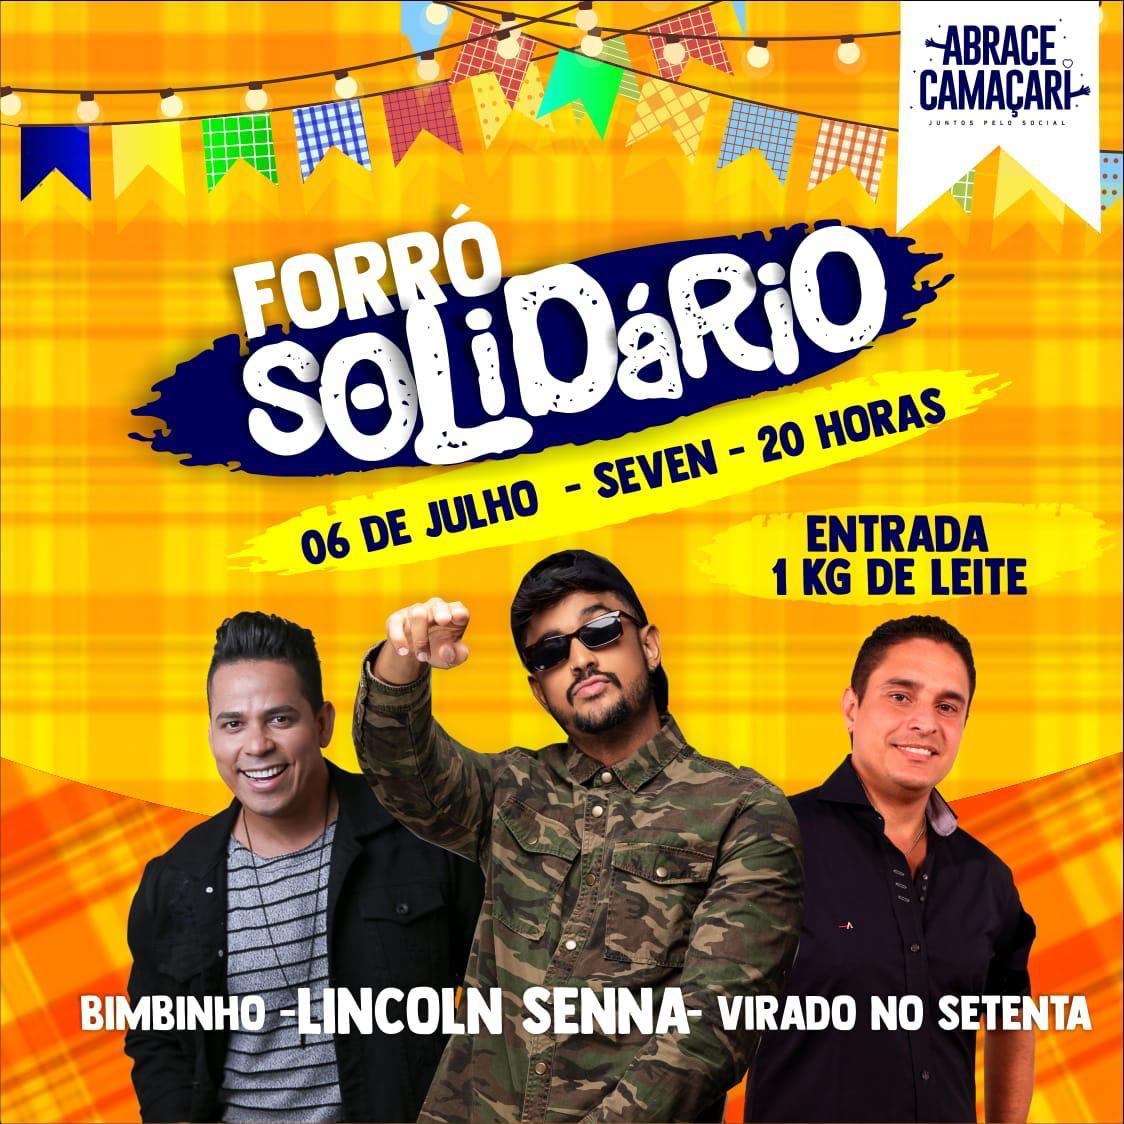 Forró Solidário do Abrace Camaçari acontece no próximo sábado (6)